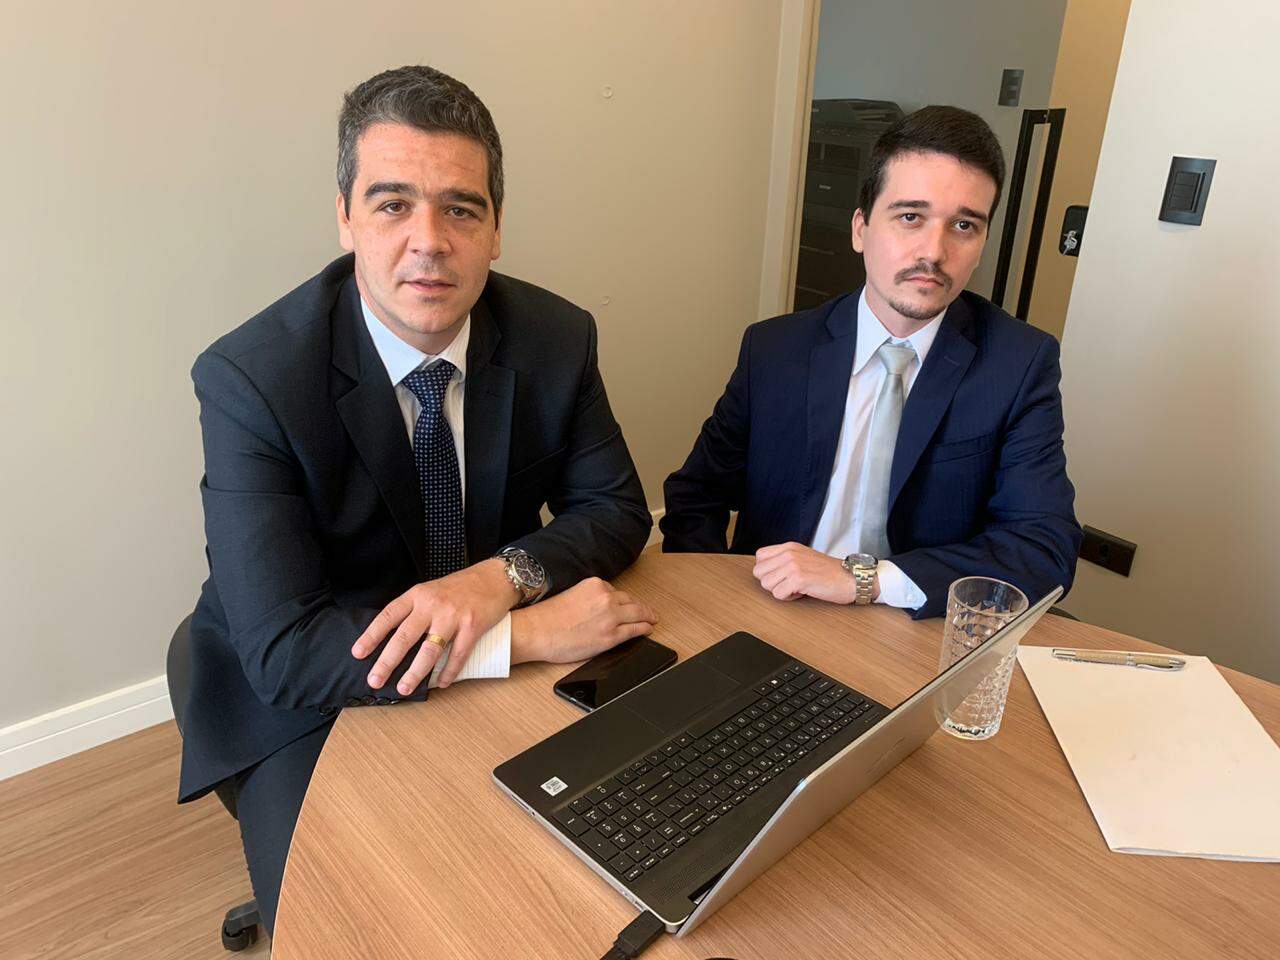 Advogados do casal,Raphael Meirelles e Alvaro Soares